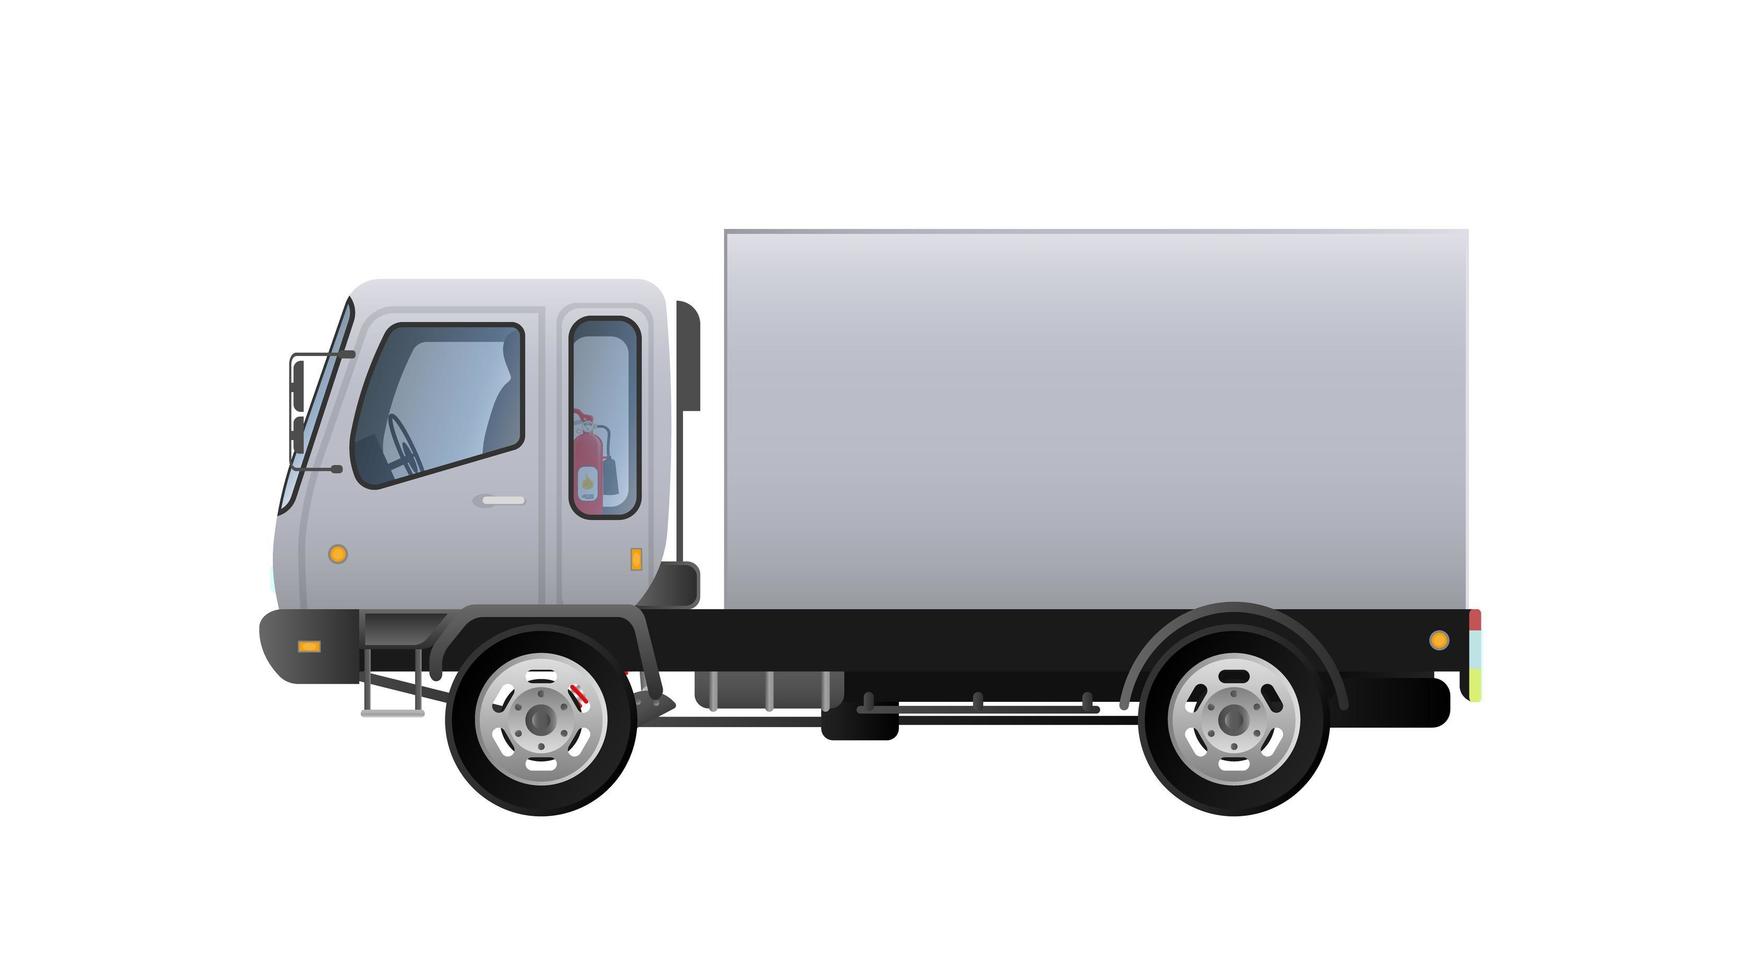 vektor liten lastbil från sidan. leverans av last. solid och platt färgdesign. vit lastbil för transport. isolerad på en vit bakgrund.